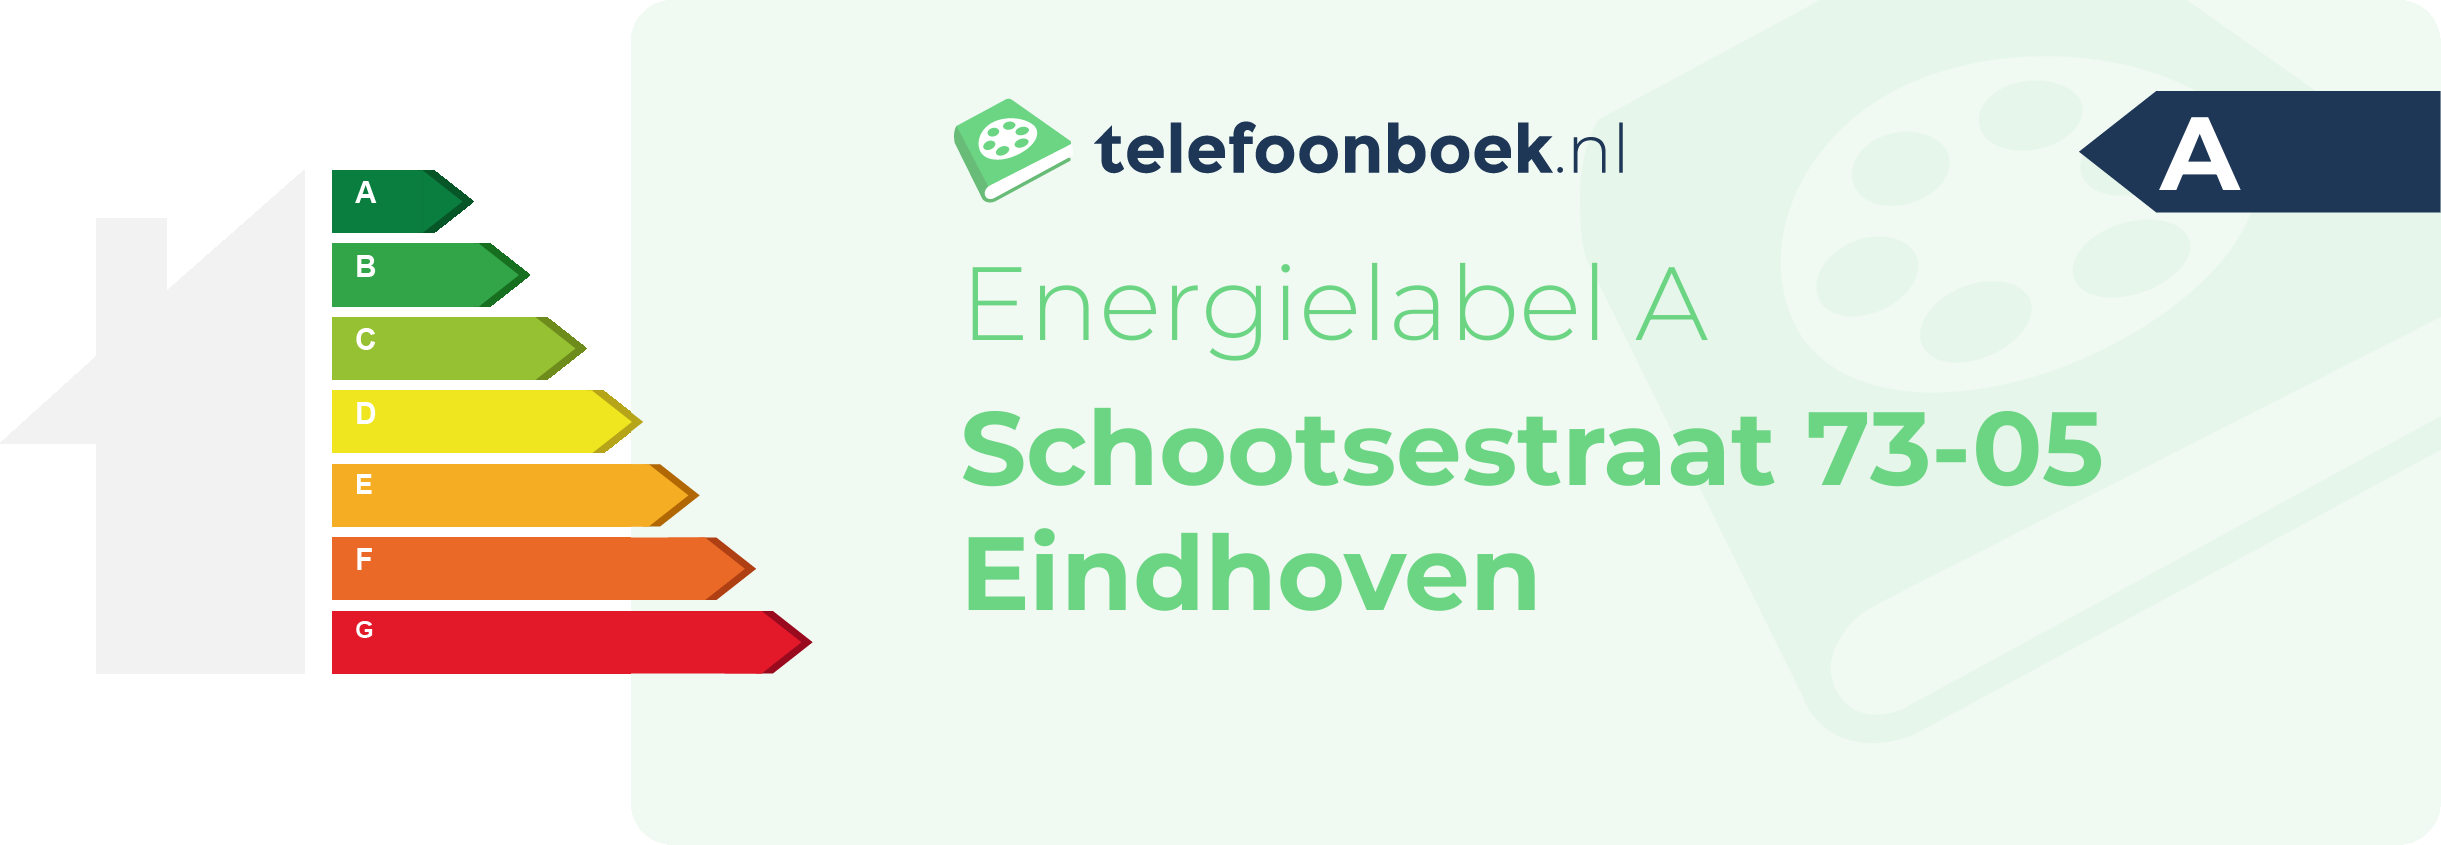 Energielabel Schootsestraat 73-05 Eindhoven